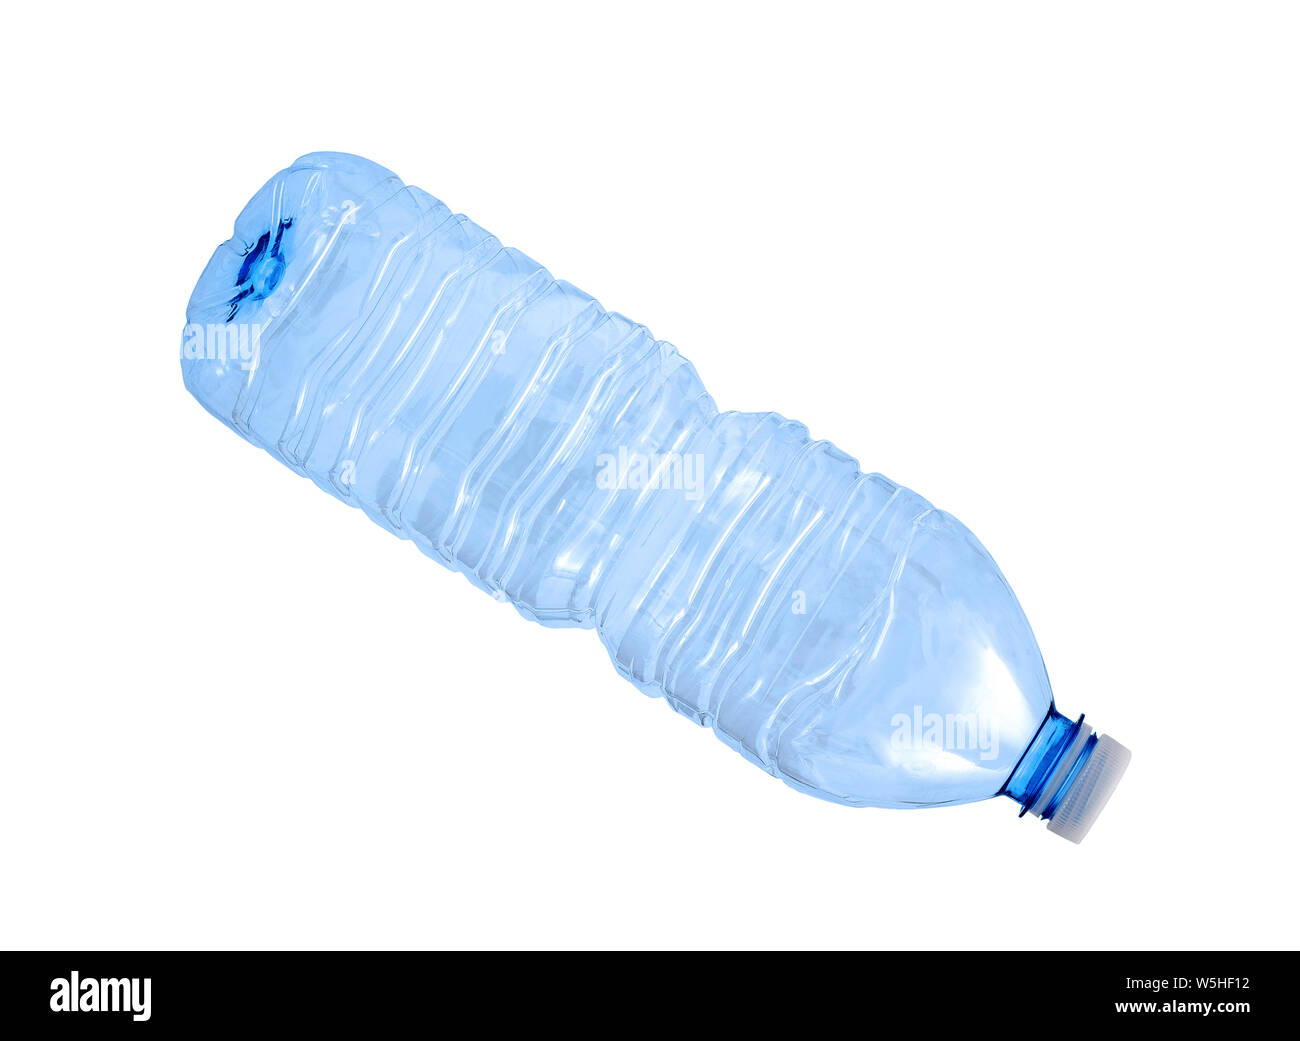 Plastic bottle isolated on white Stock Photo